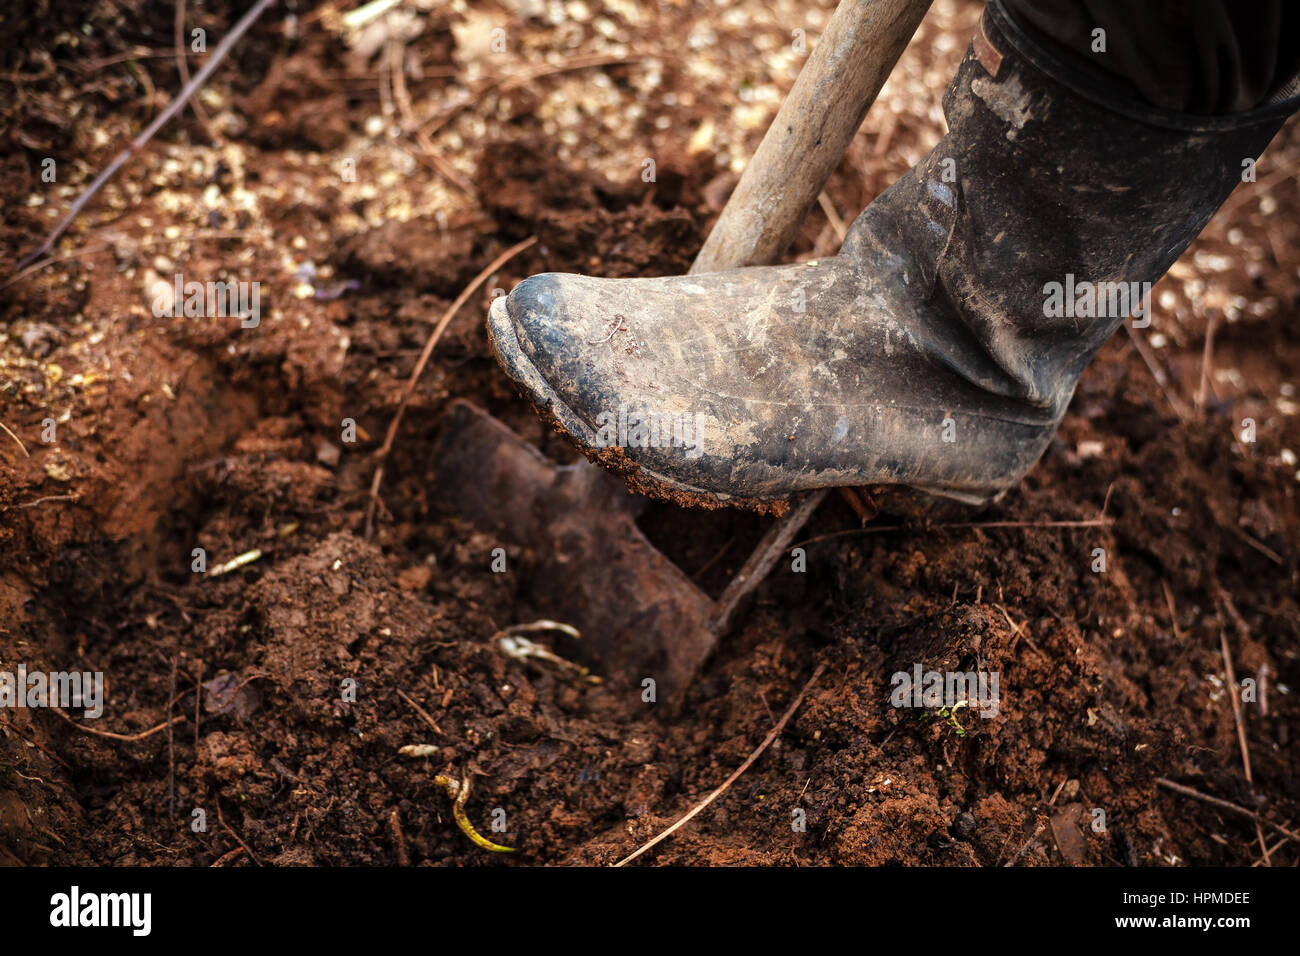 Leg in gumboot on shovel digging the soil. Stock Photo